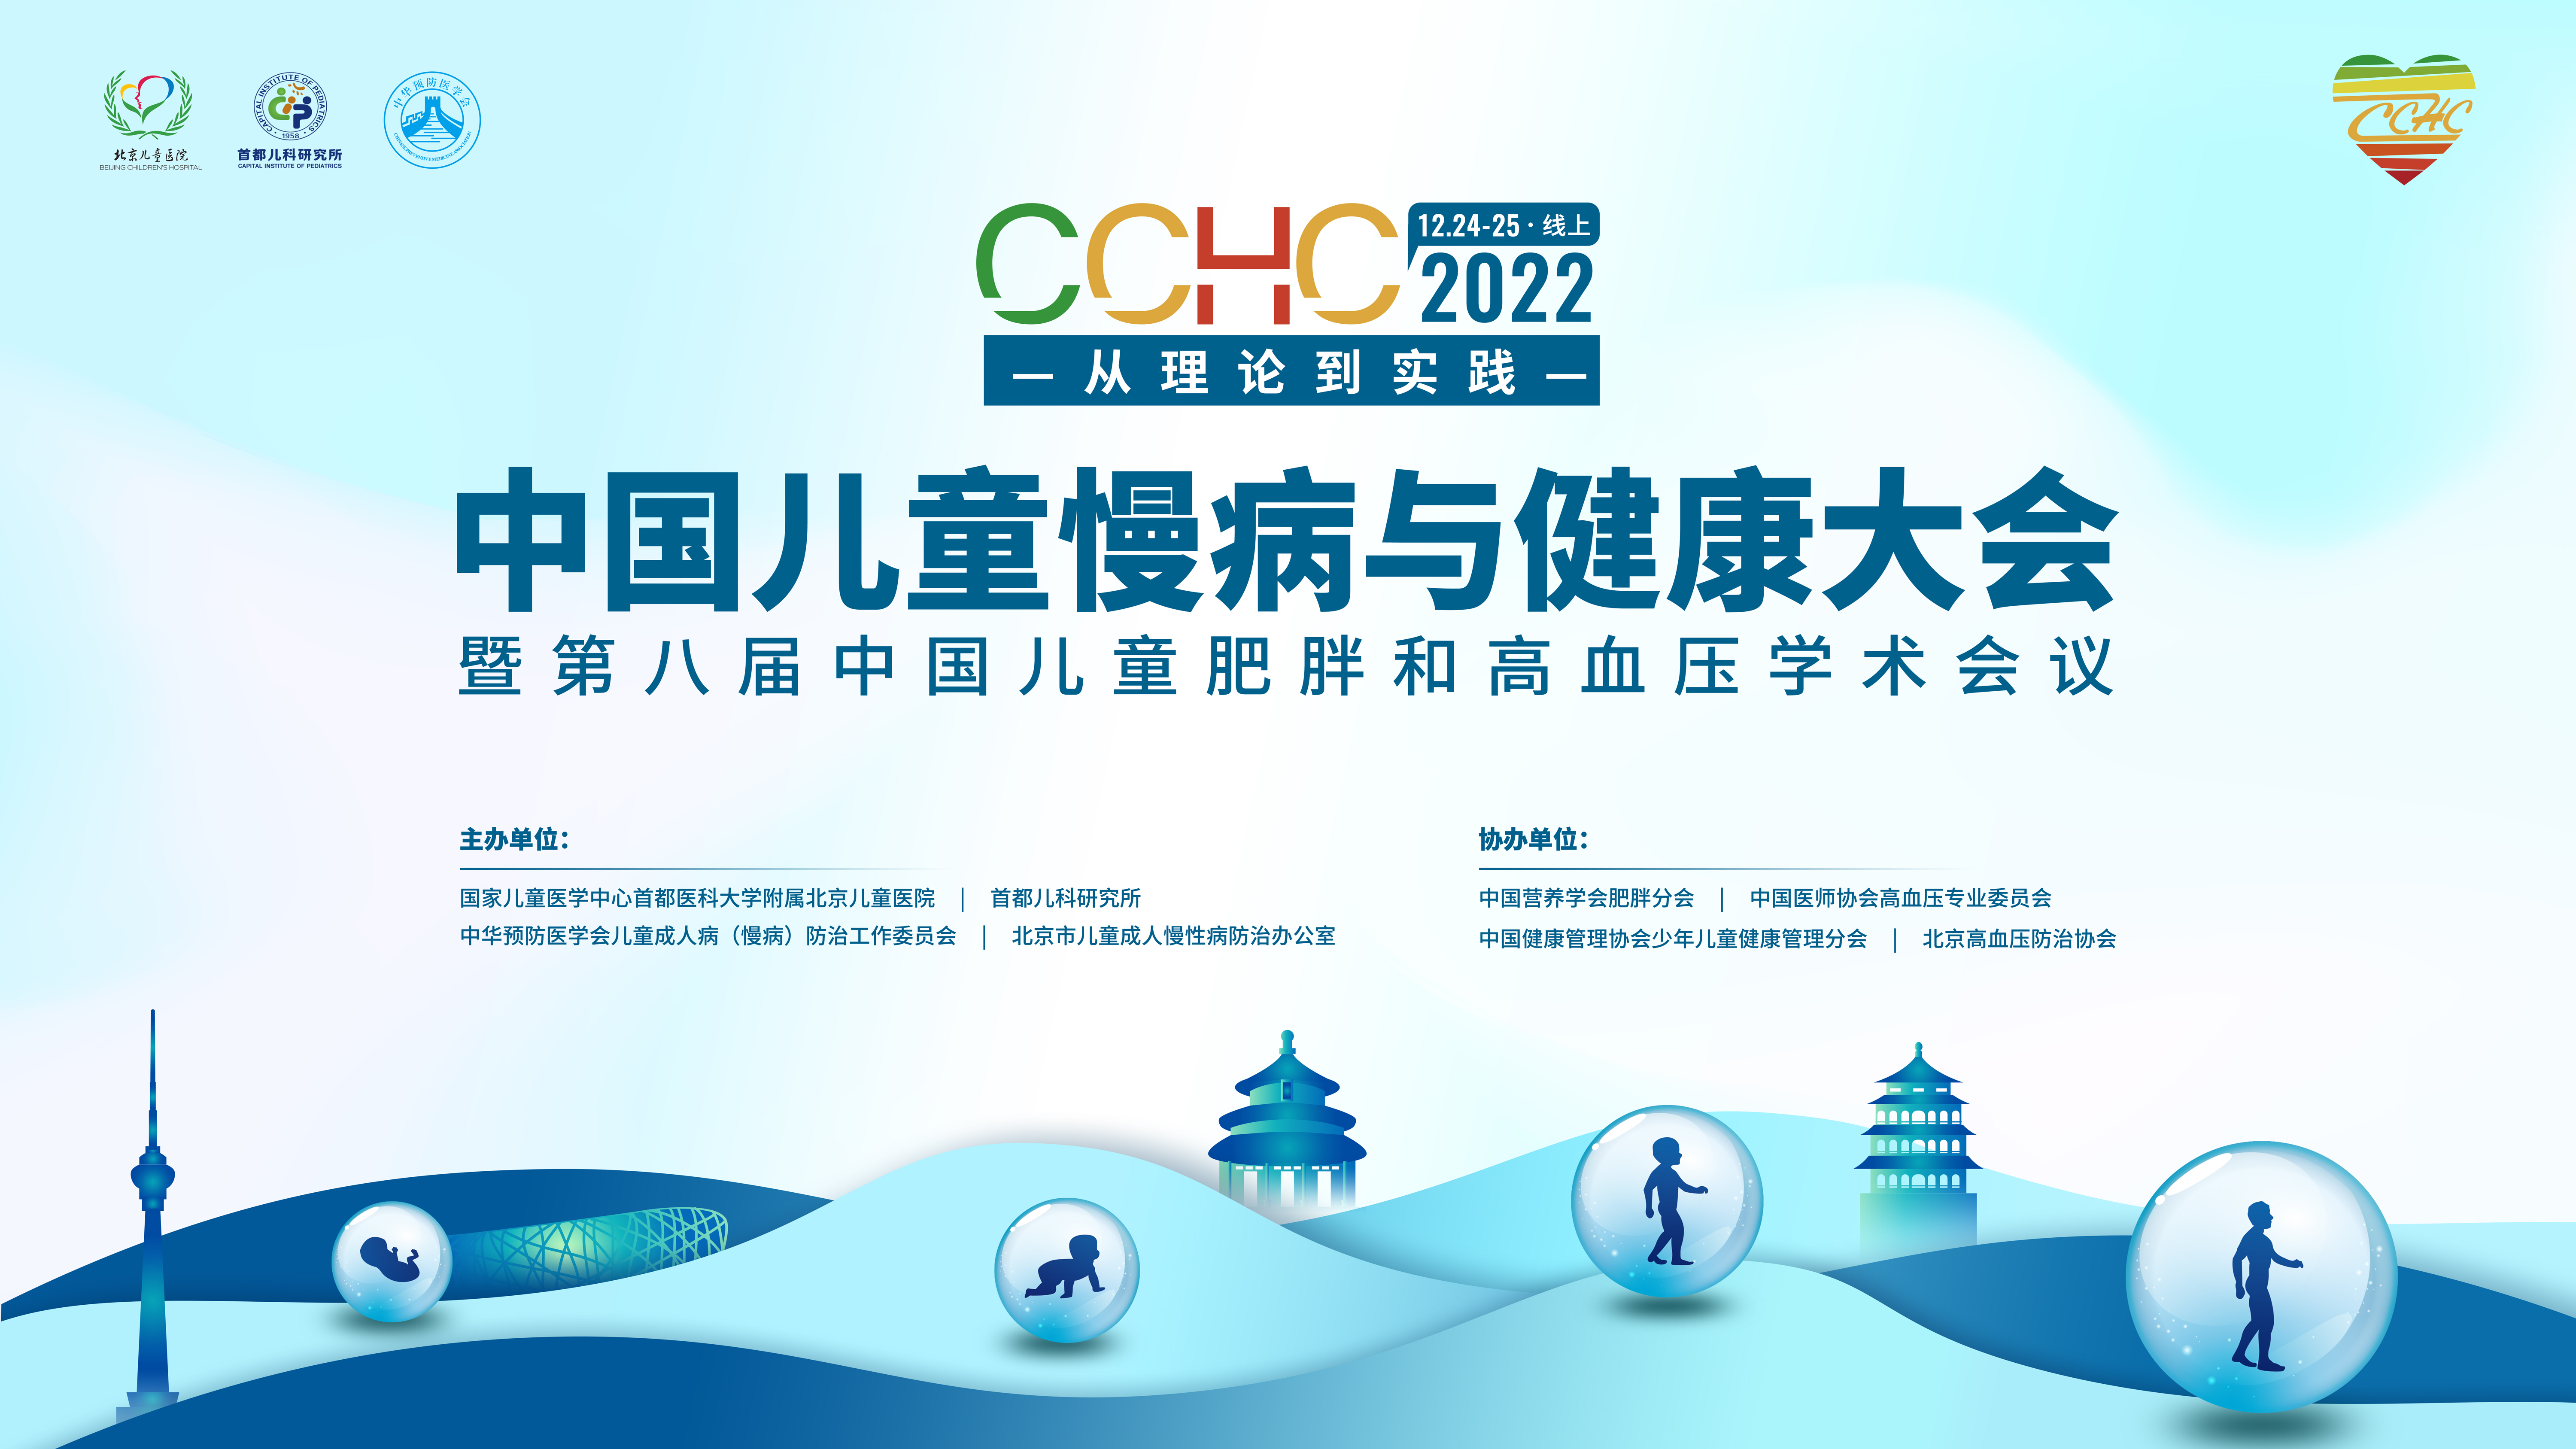 中国儿童慢病与健康大会暨第八届中国儿童肥胖和高血压学术会议